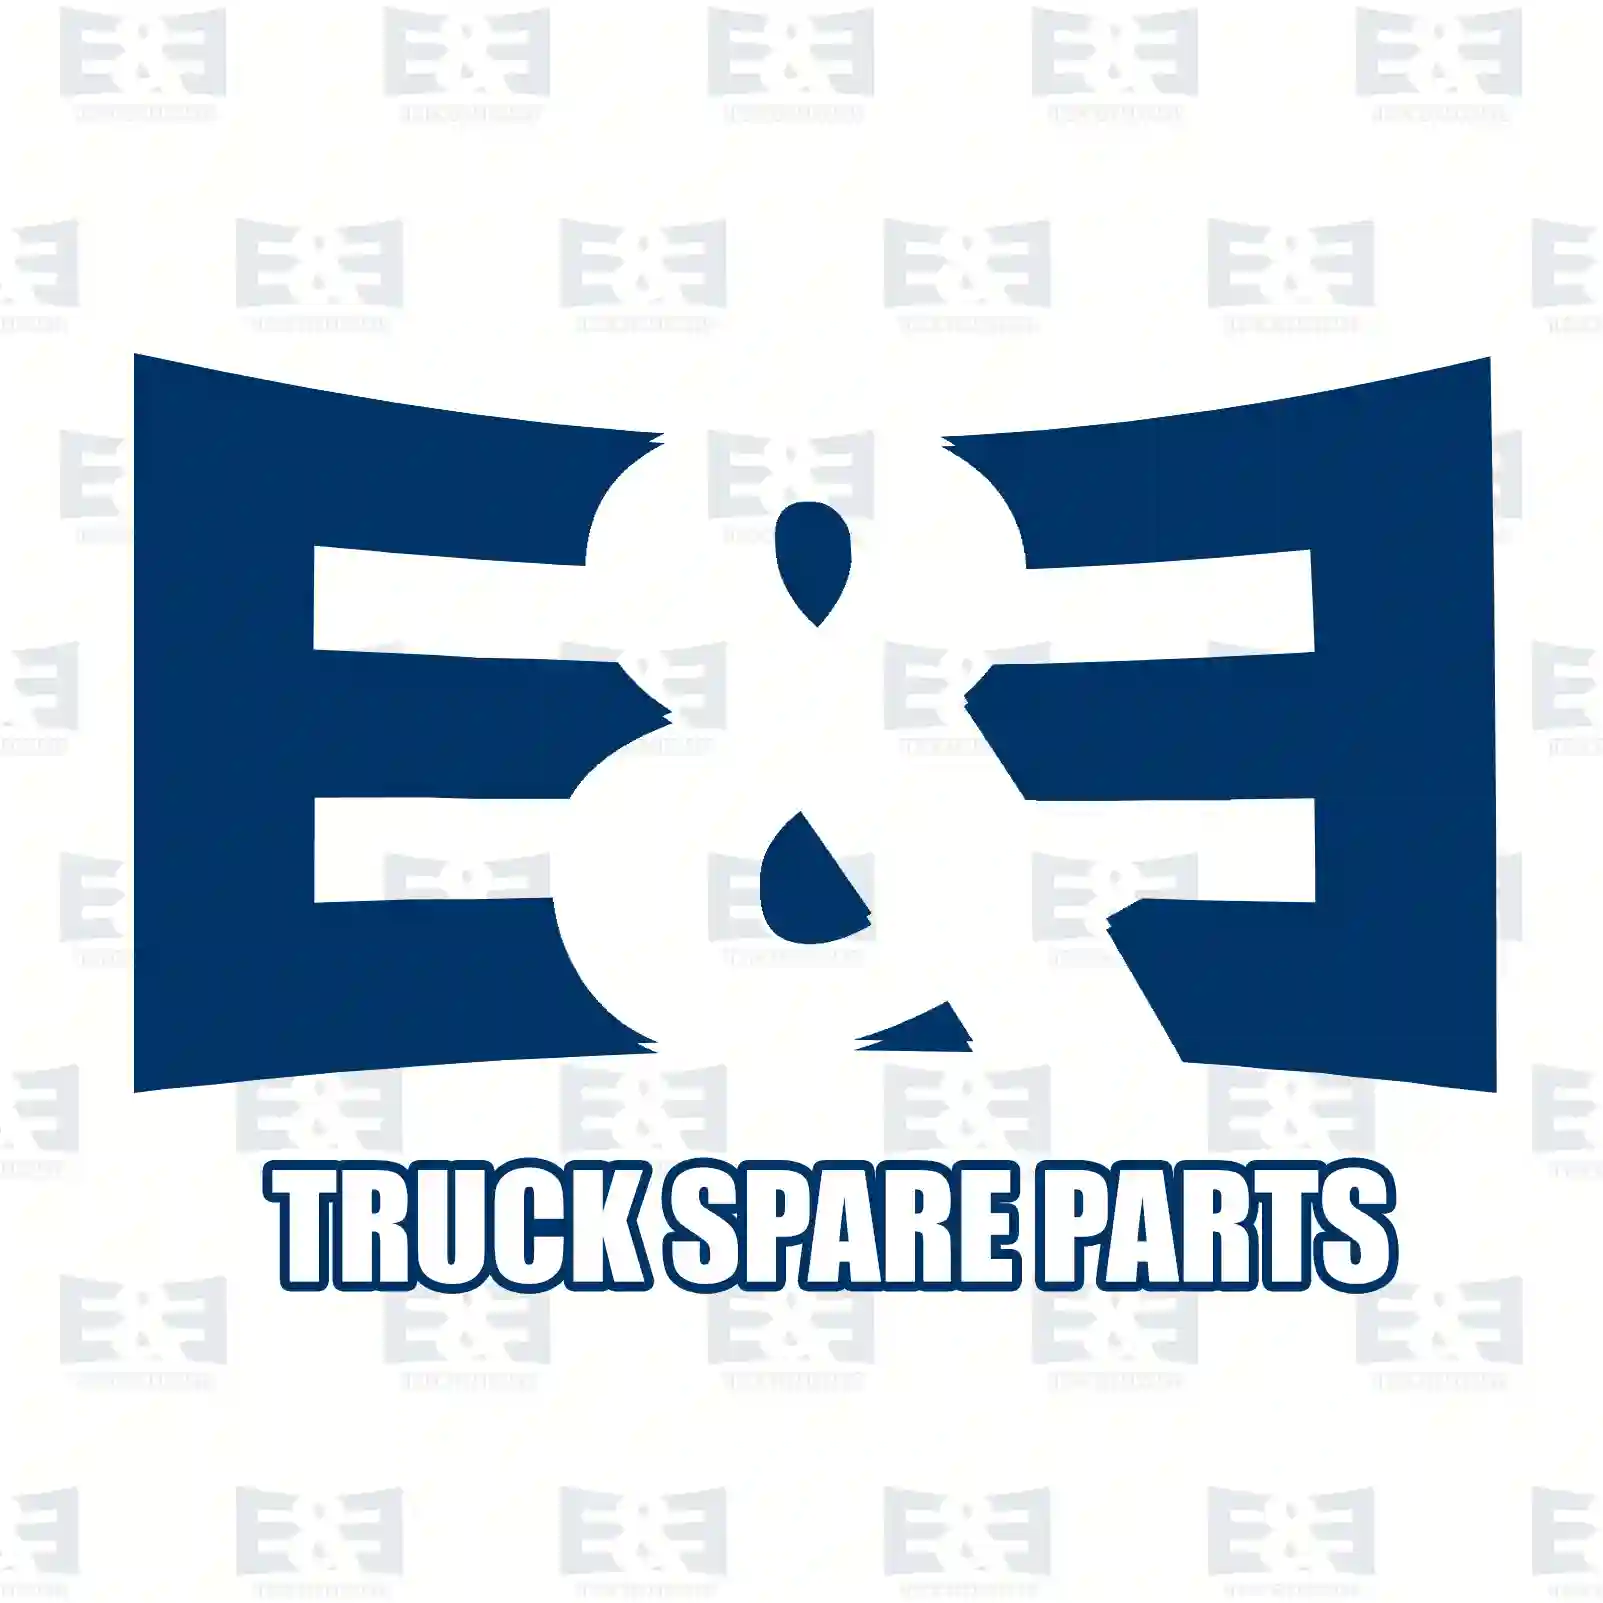 Frame, door handle, left, 2E2289395, 1486797 ||  2E2289395 E&E Truck Spare Parts | Truck Spare Parts, Auotomotive Spare Parts Frame, door handle, left, 2E2289395, 1486797 ||  2E2289395 E&E Truck Spare Parts | Truck Spare Parts, Auotomotive Spare Parts